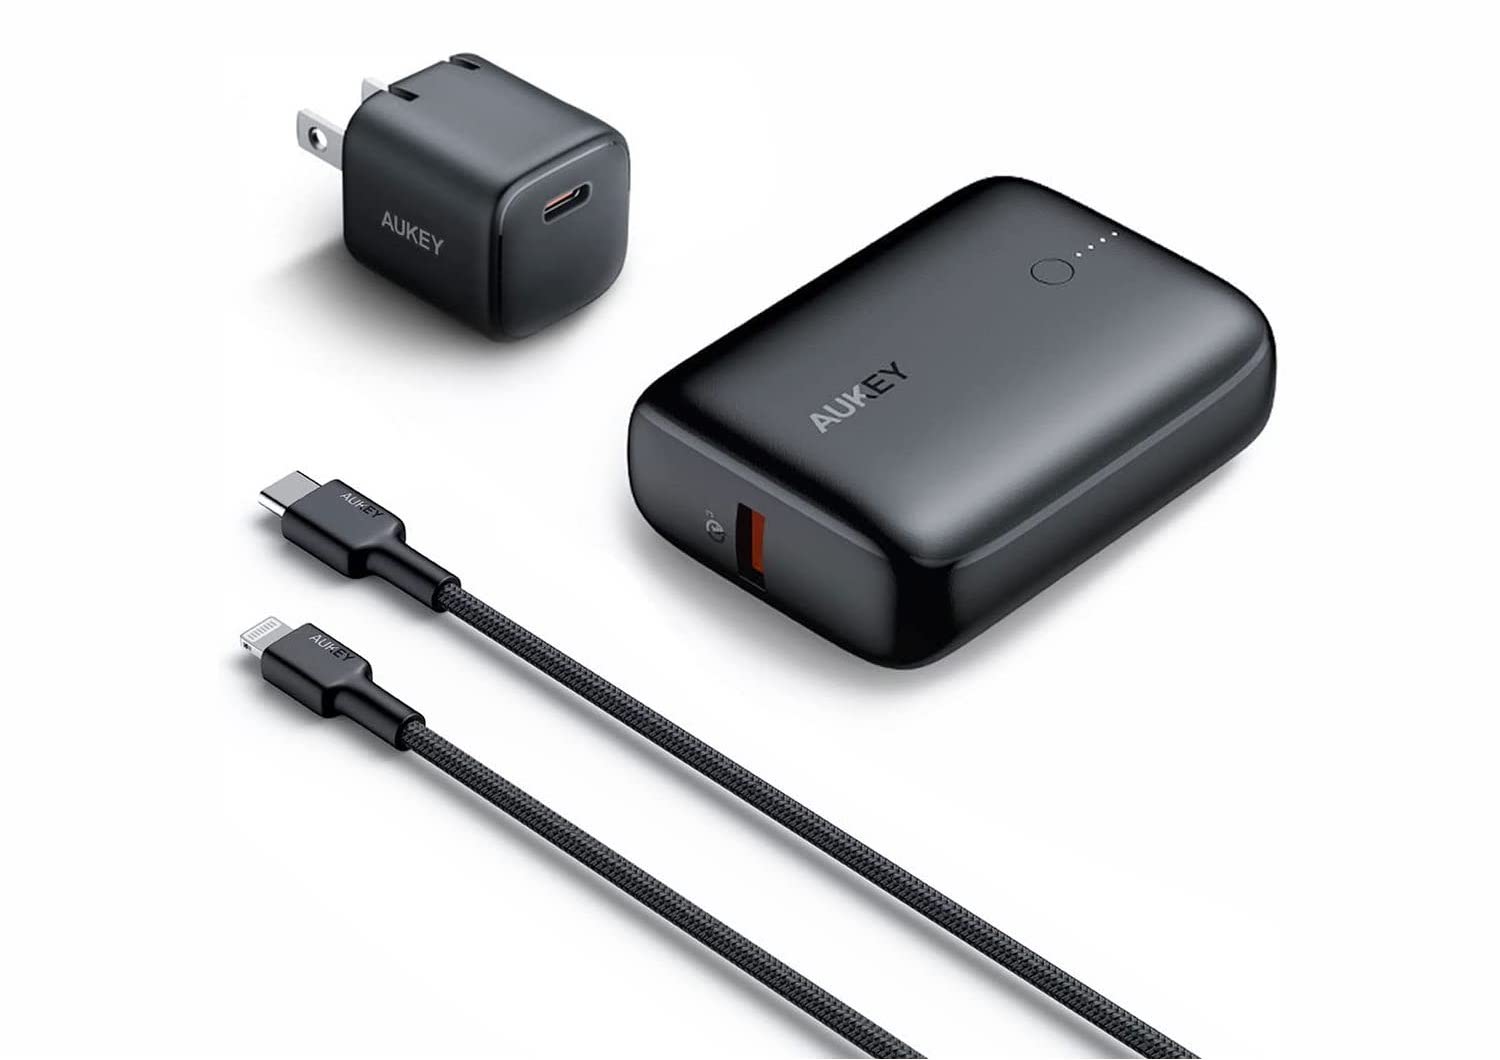 AUKEY、USB-C充電器、モバイルバッテリー、USB-C – Lightningケーブルの3点セット発売